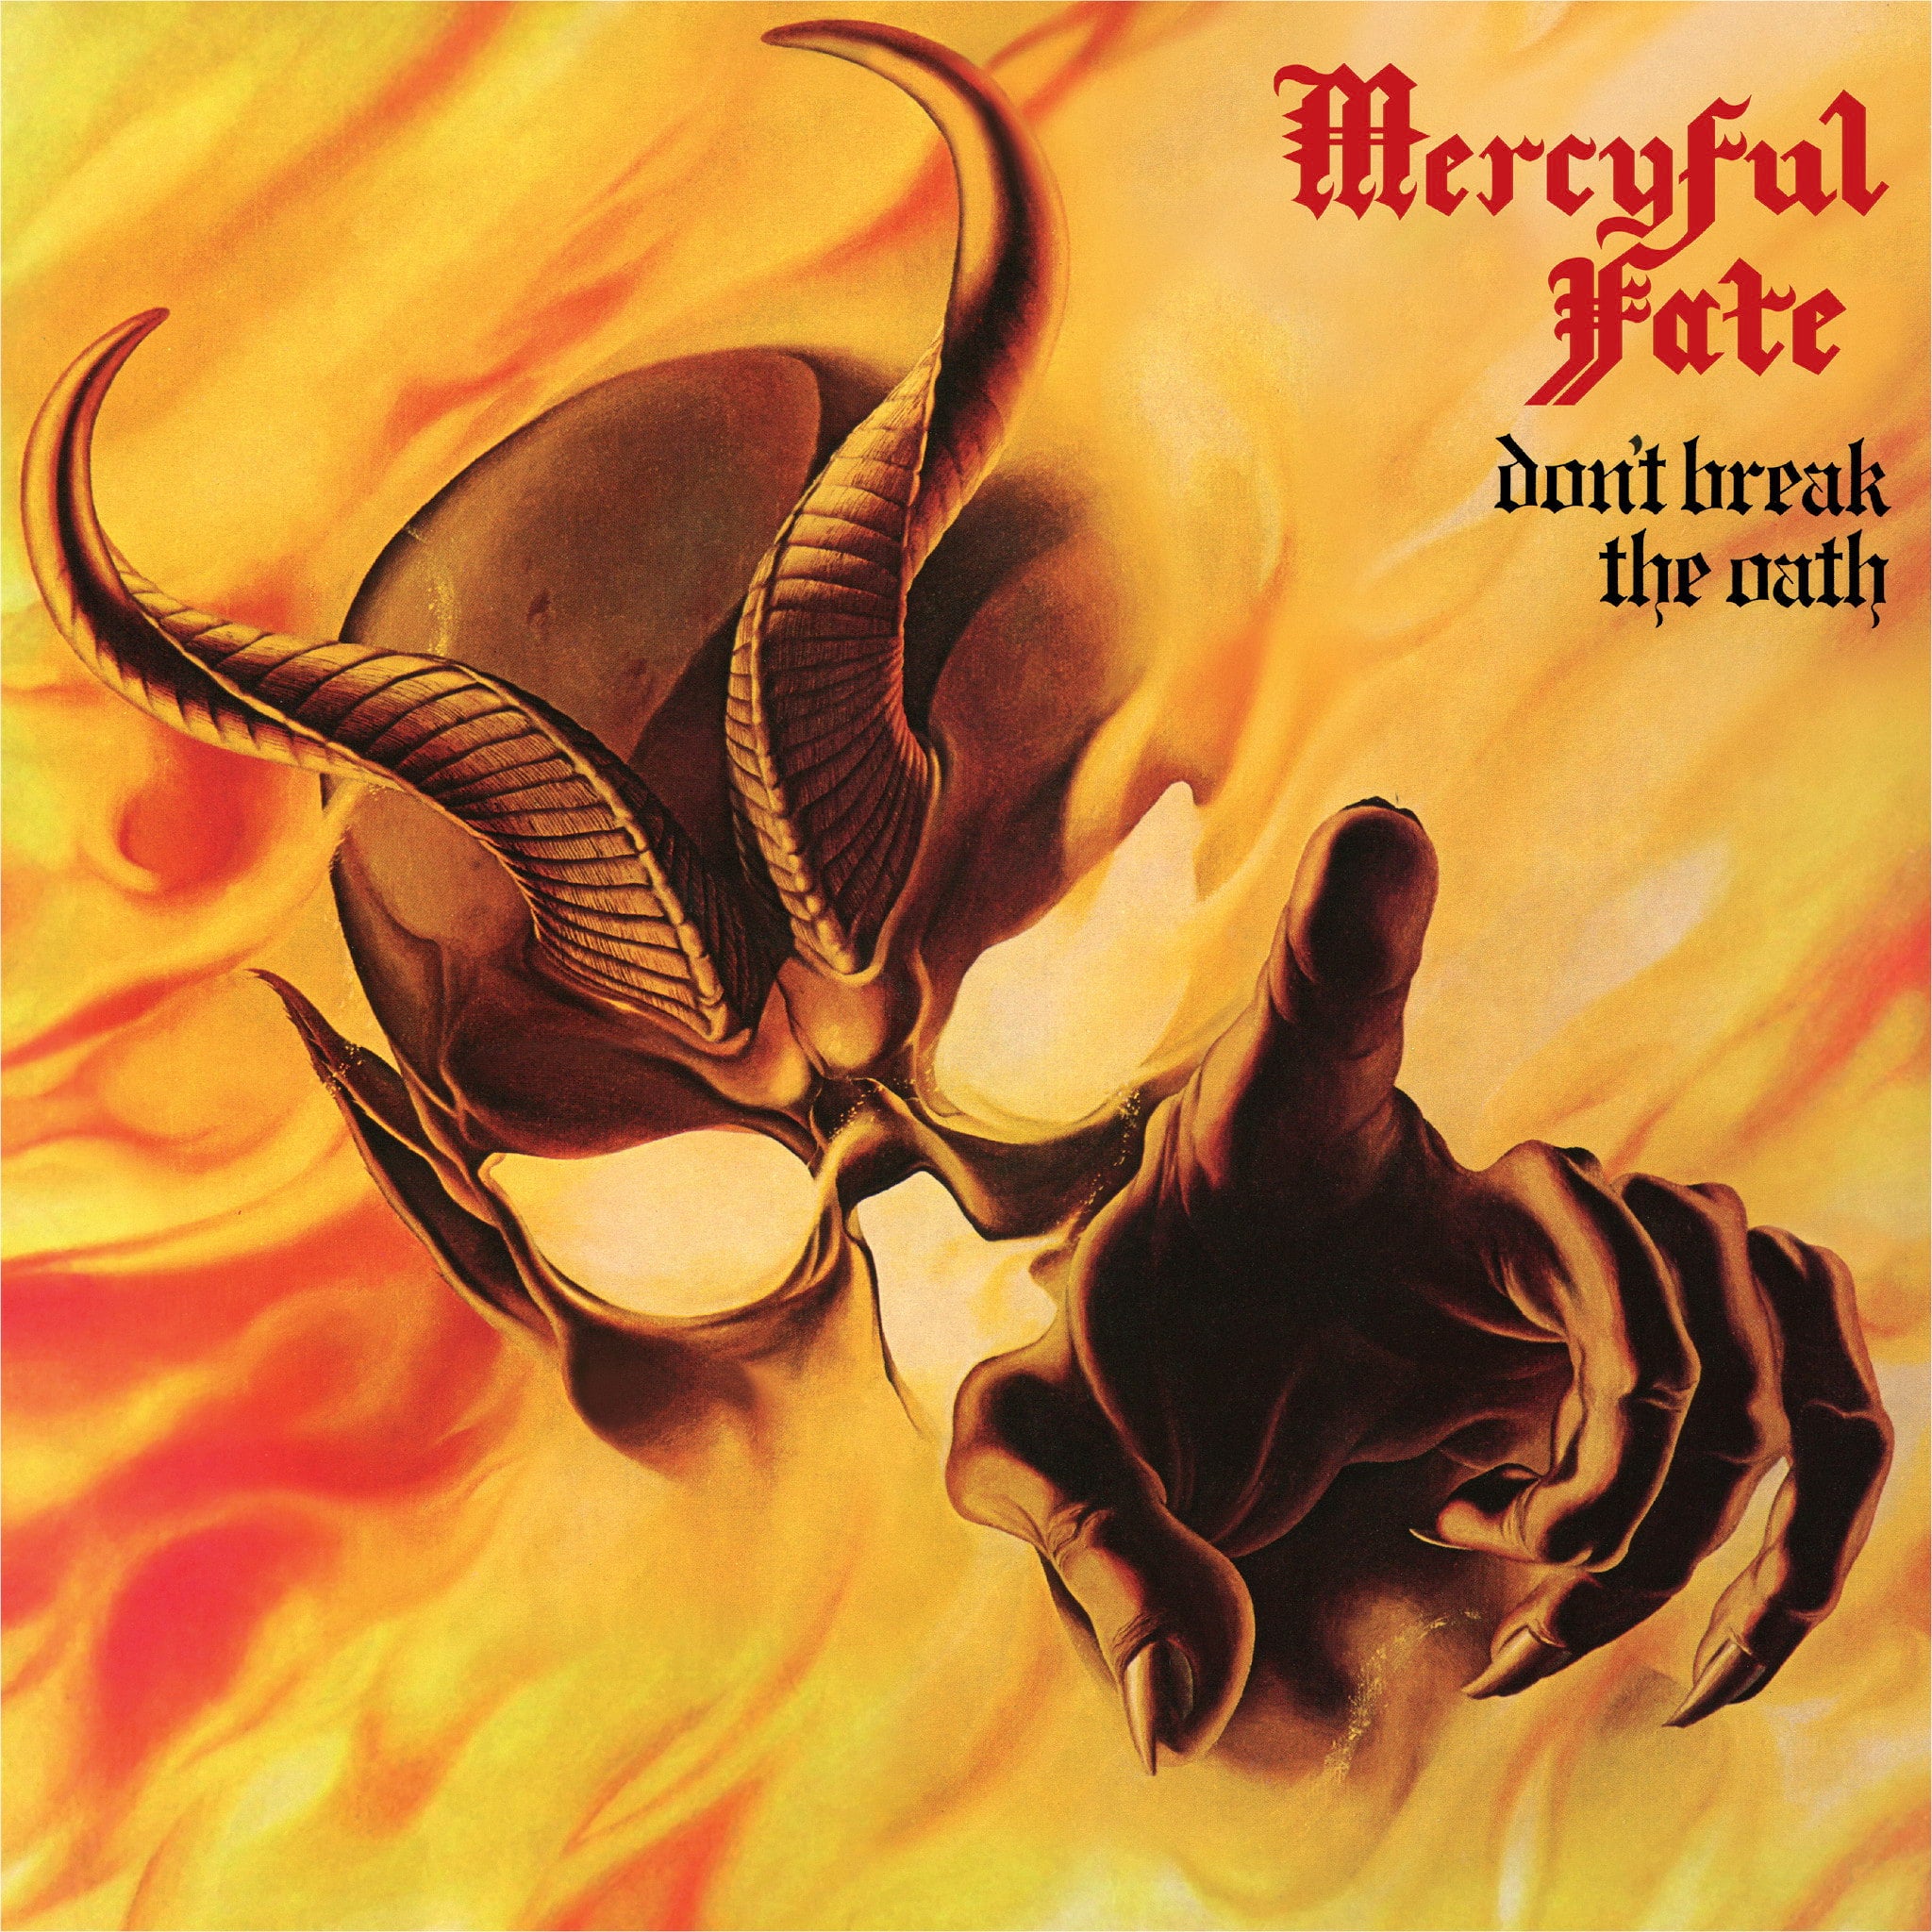 Mercyful Fate - Don't Break the Oath (1997 Reissue) (CD)